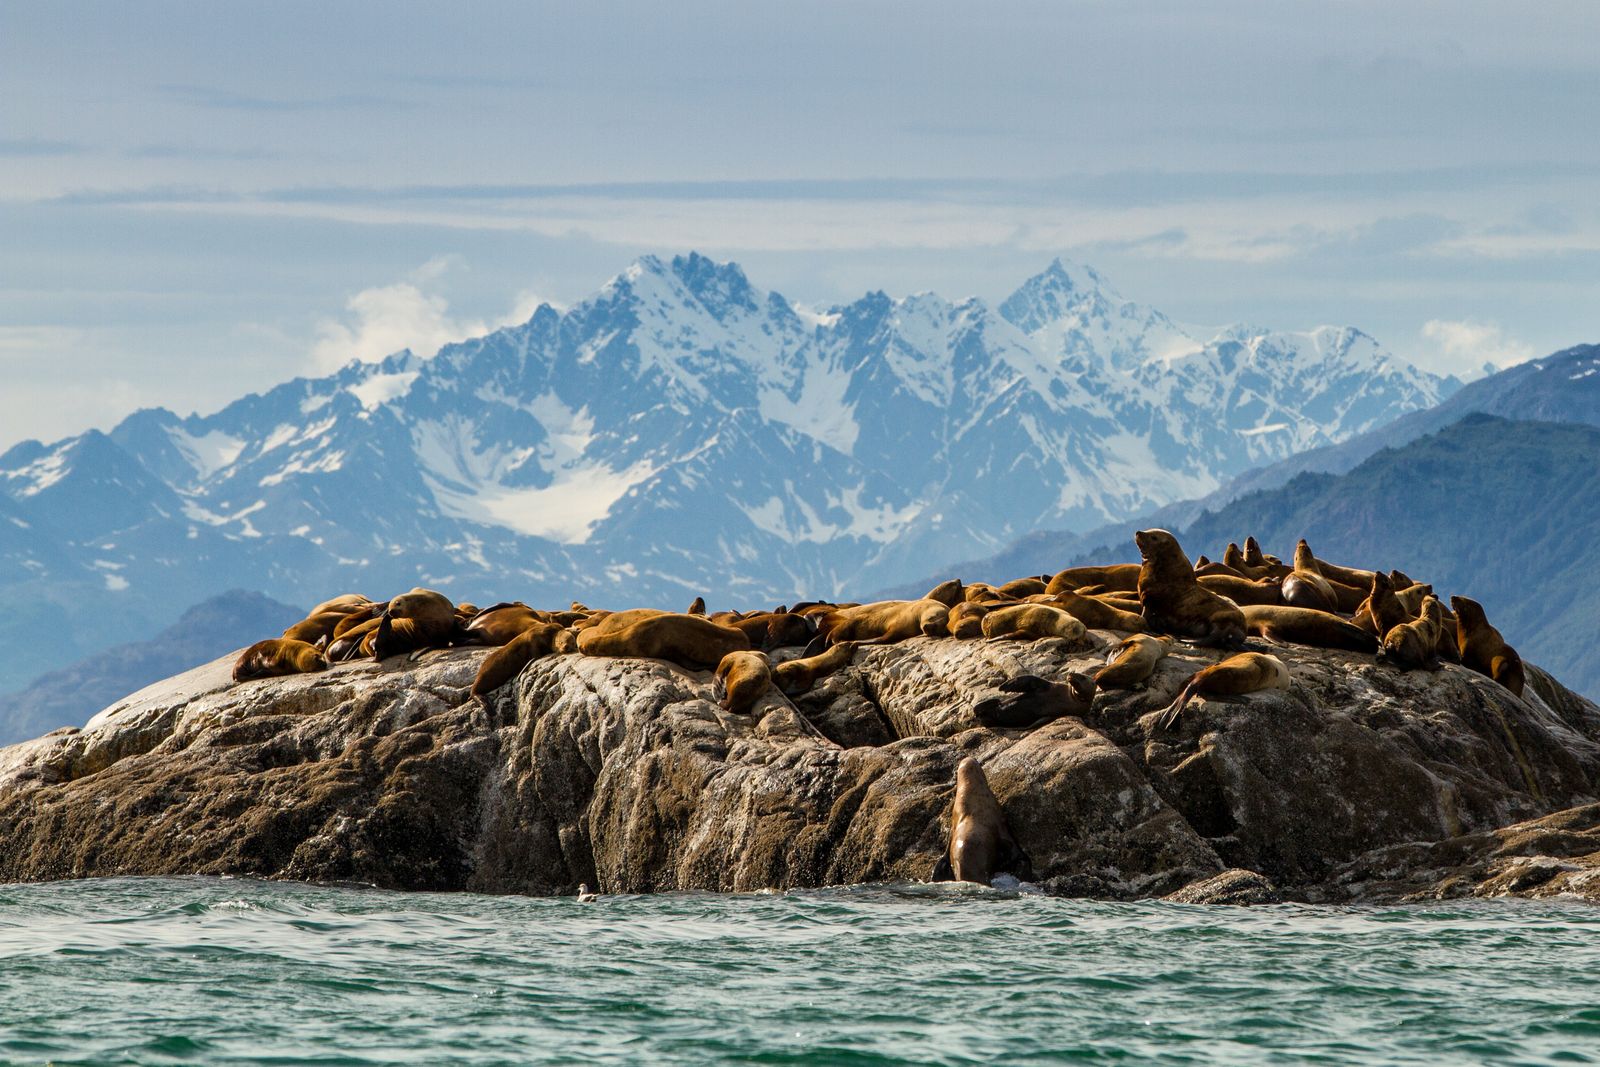 Robben sonnen sich auf dem felsigen Ufer Alaskas